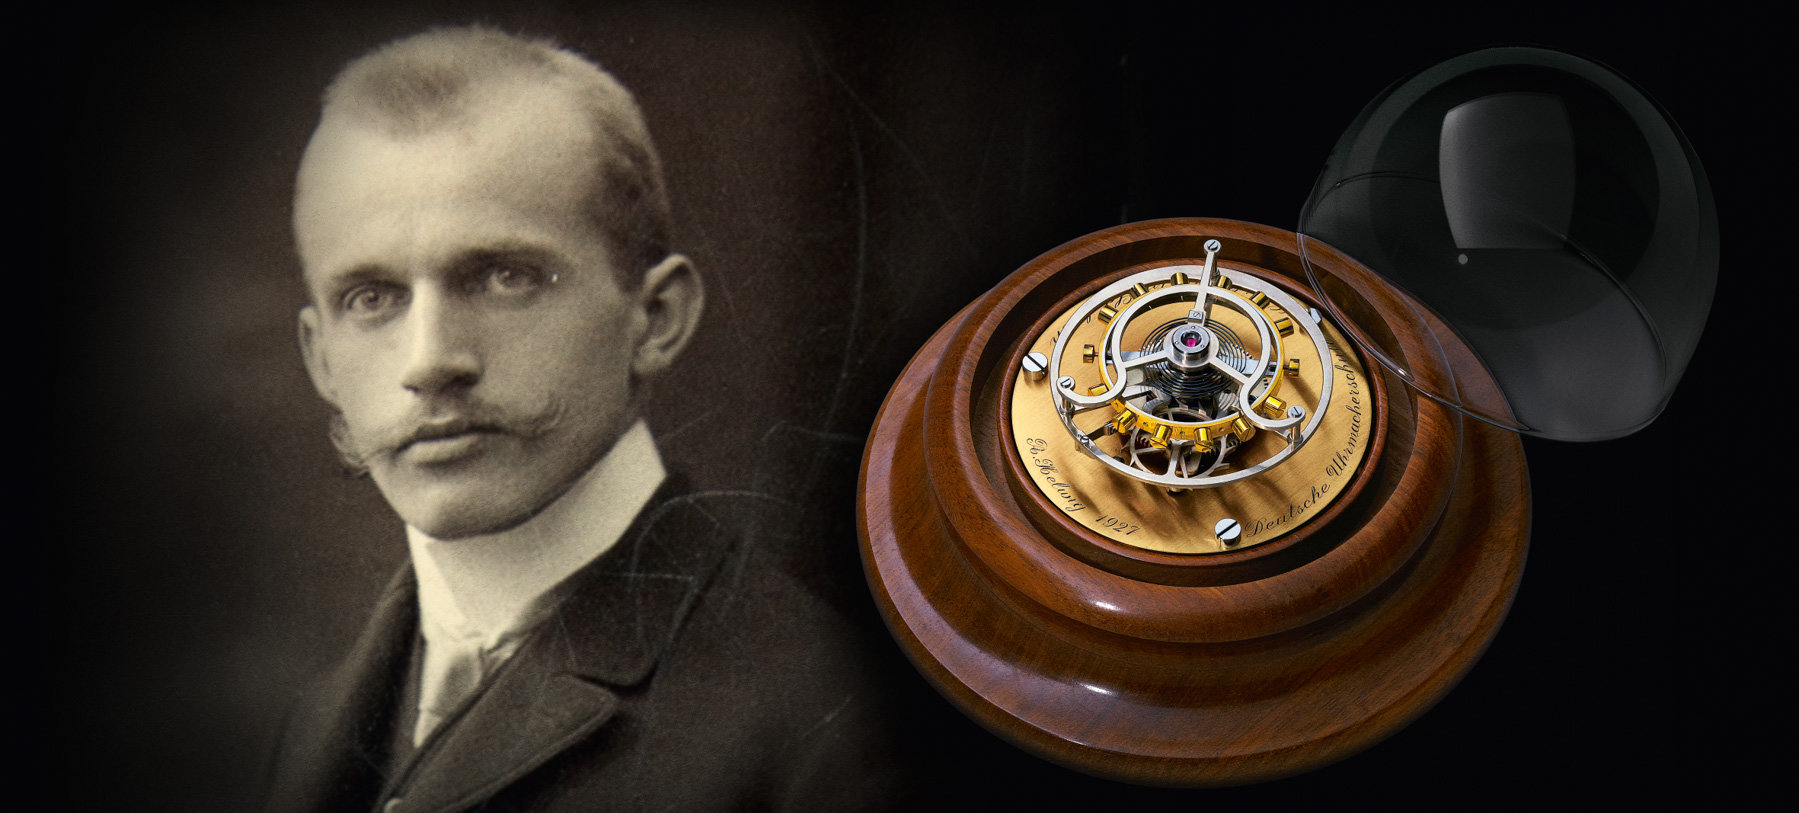 格拉苏蒂原创腕表庆祝飞行陀飞轮问世100周年